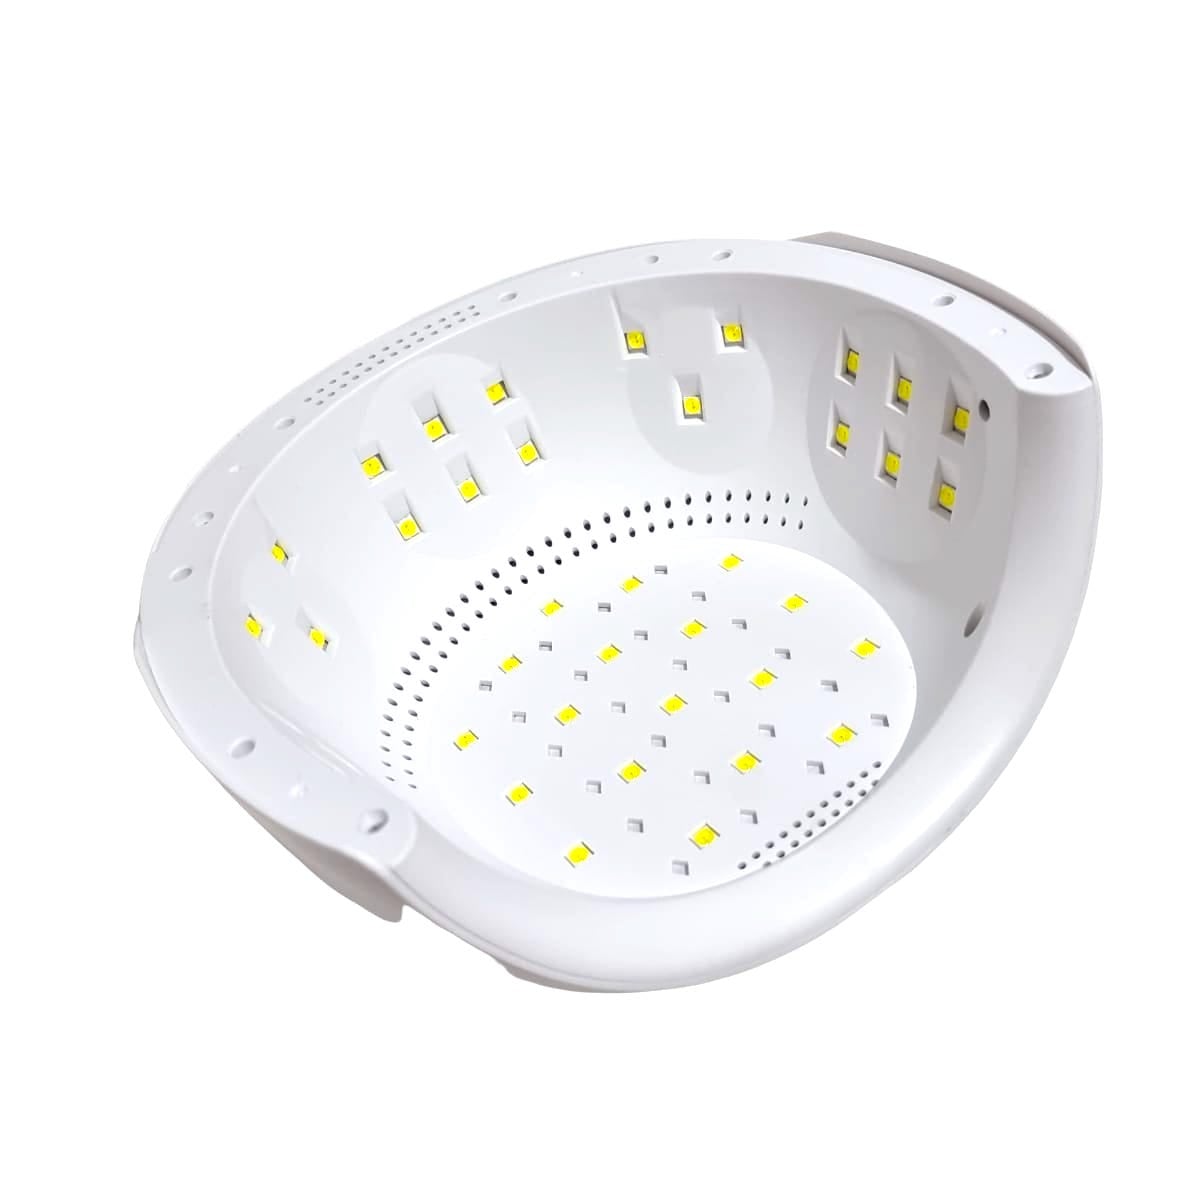 Lampa UV/LED 120W -42 leduri